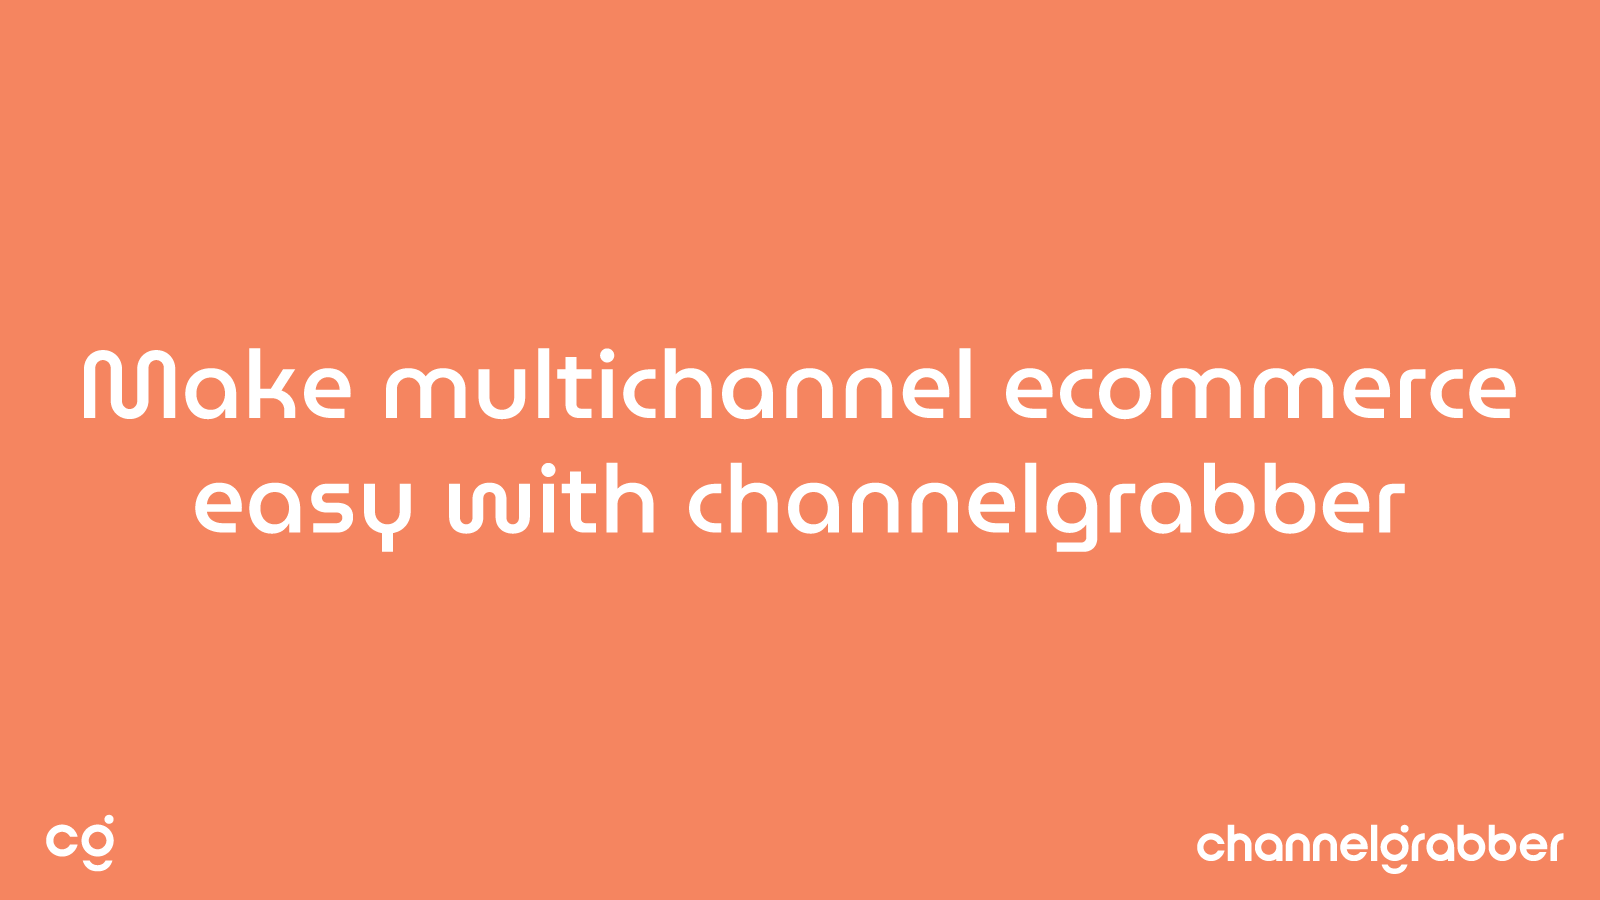 ChannelGrabber: E-commerce Made Easy